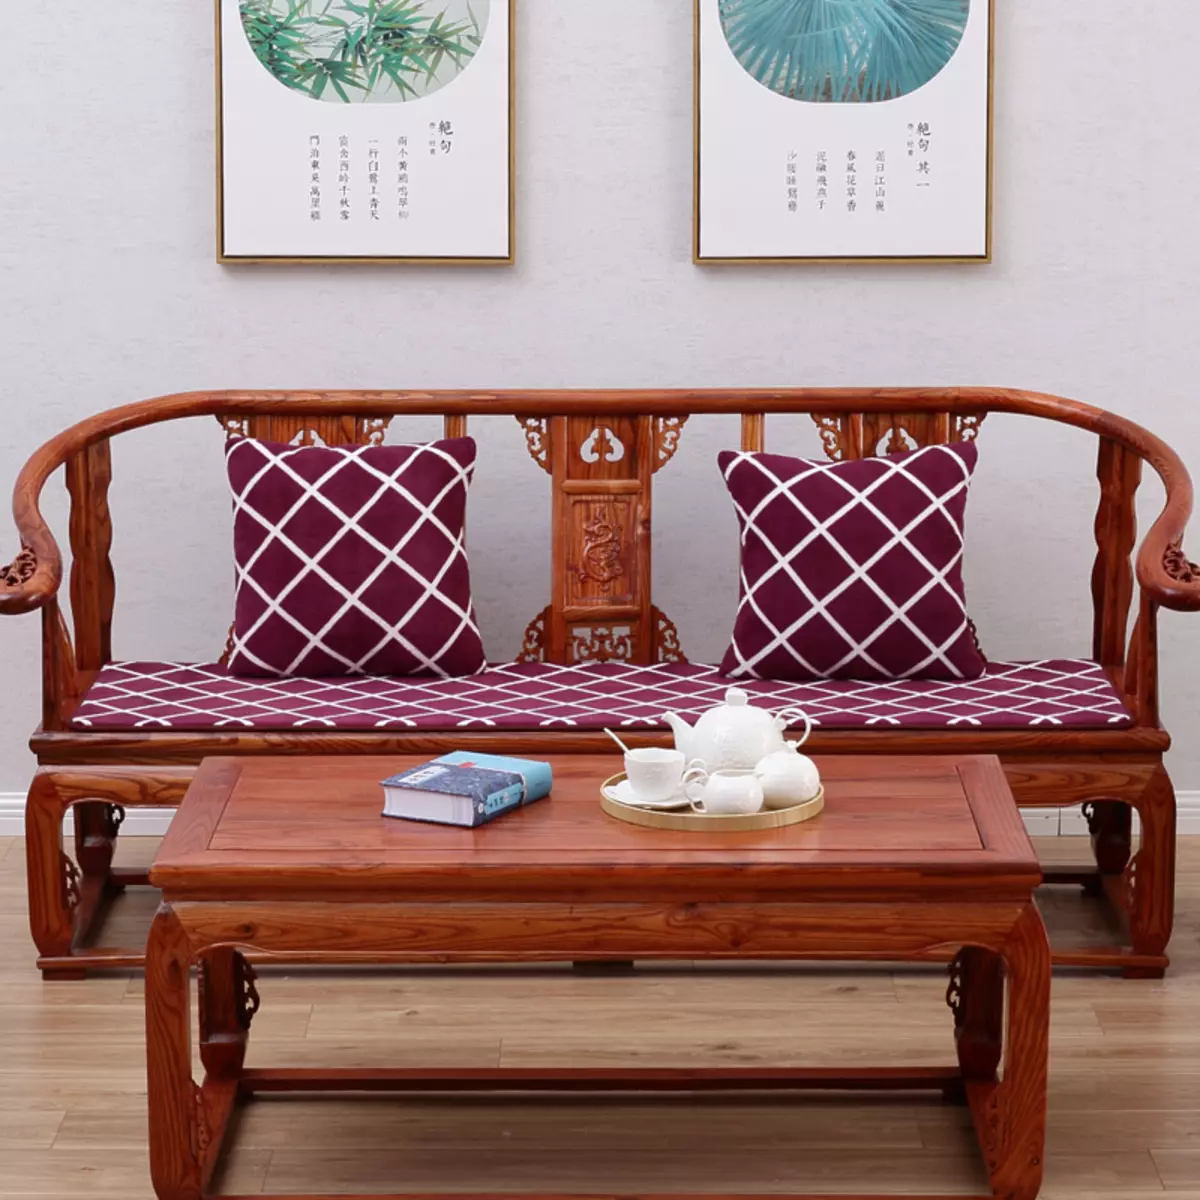 sofás de madera: a partir de una matriz de pino y haya, los modelos en el marco y de madera con espalda, plegable sofás angulares y rectos unprofinal 9023_55